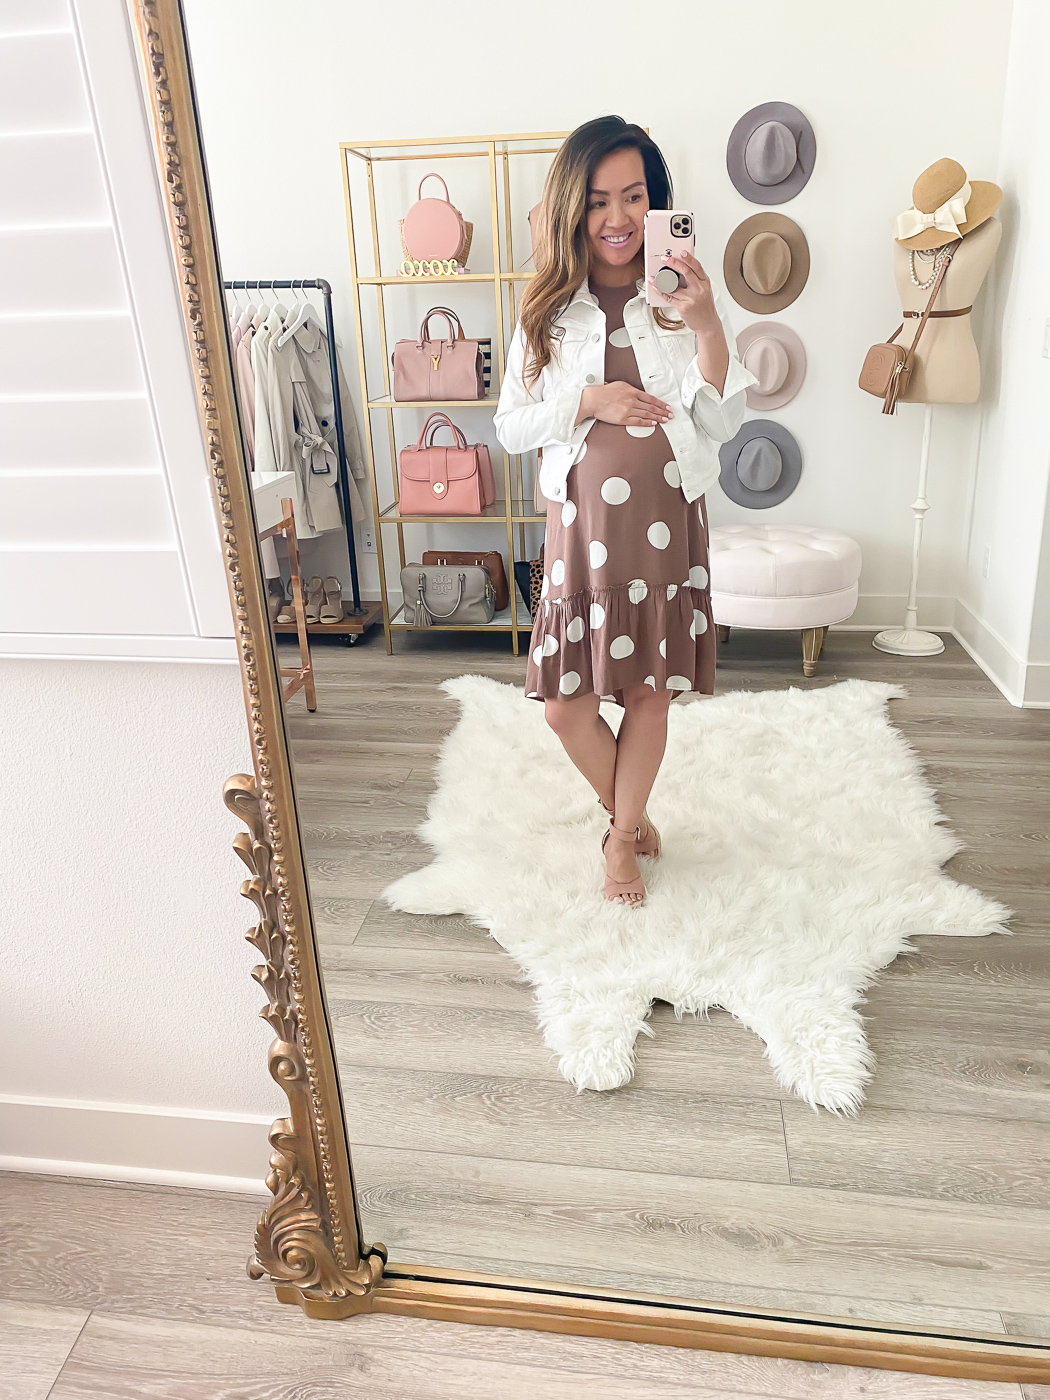 loft white polka dot dress